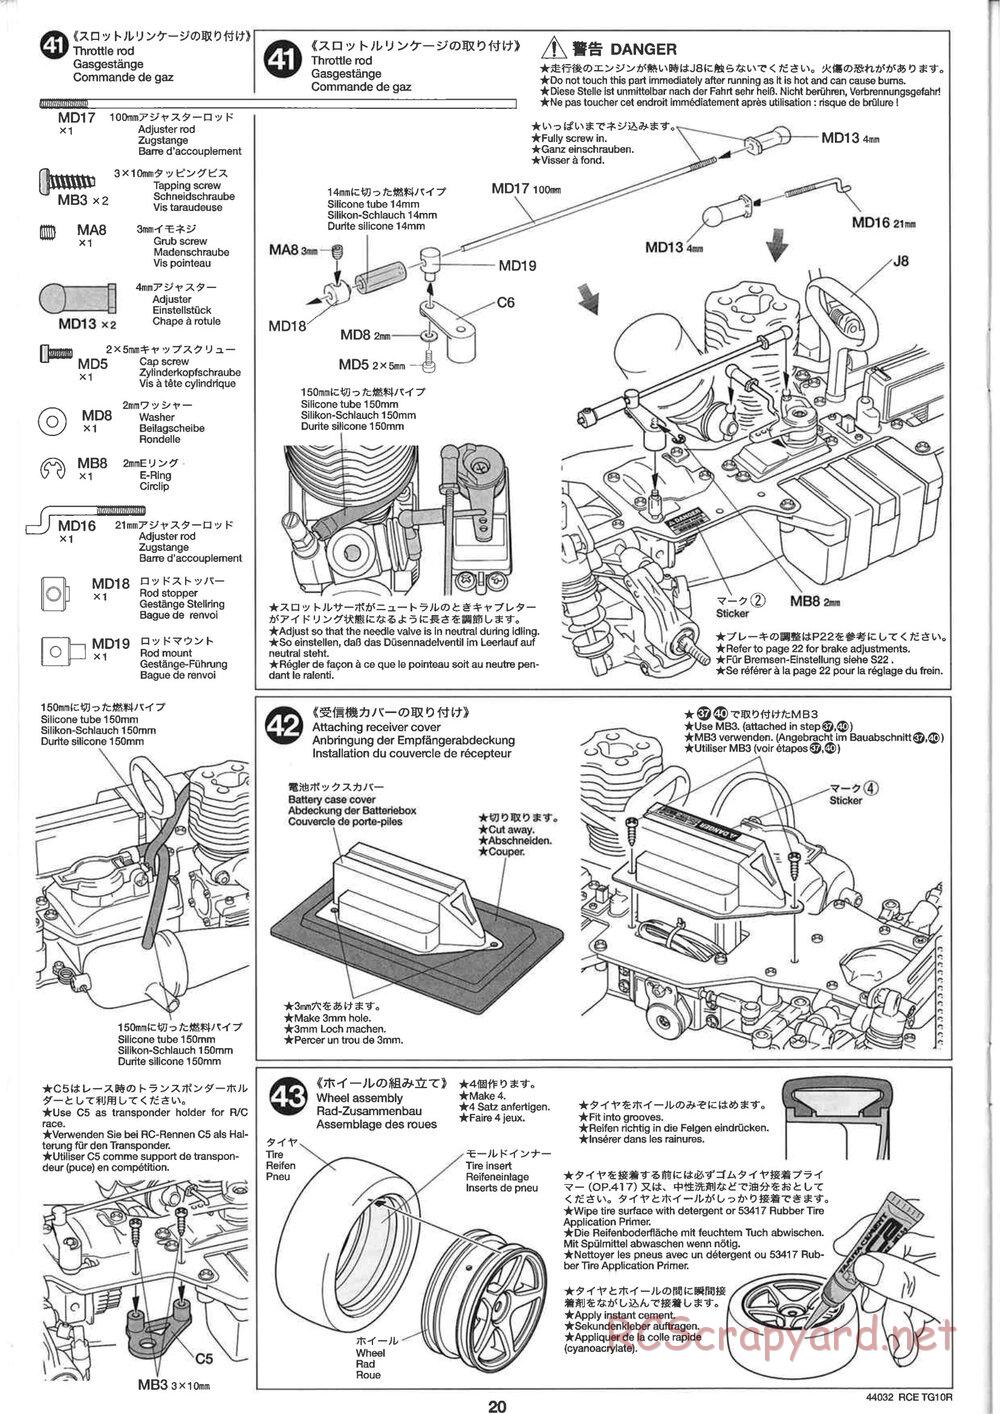 Tamiya - TG10R Chassis - Manual - Page 20